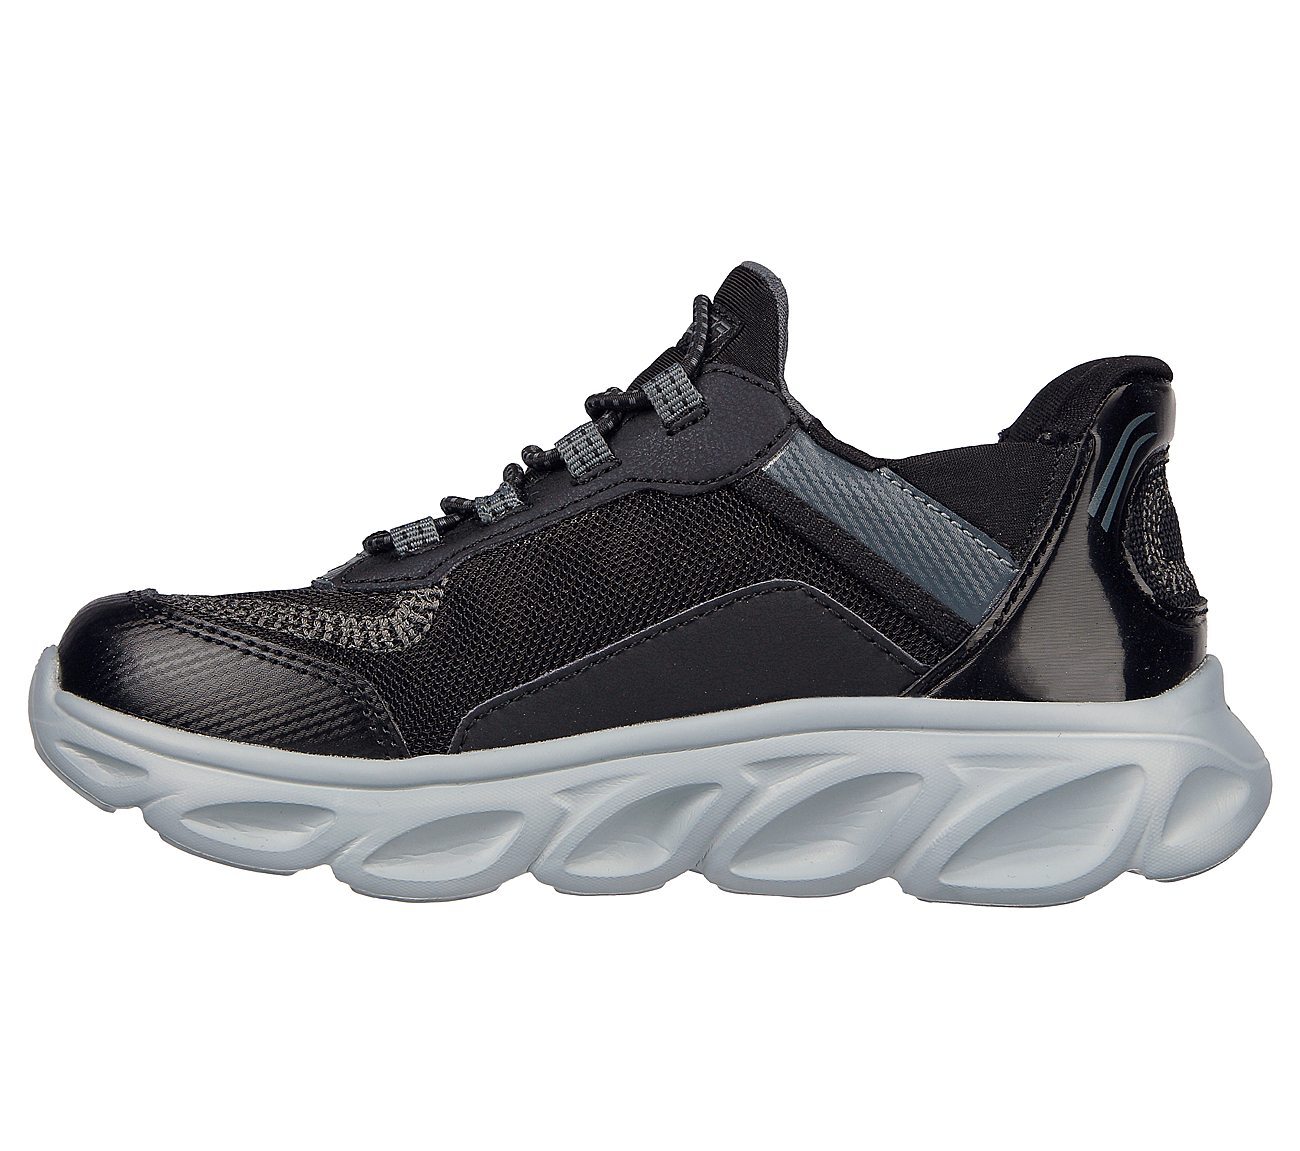 FLEX GLIDE, BLACK/CHARCOAL Footwear Left View